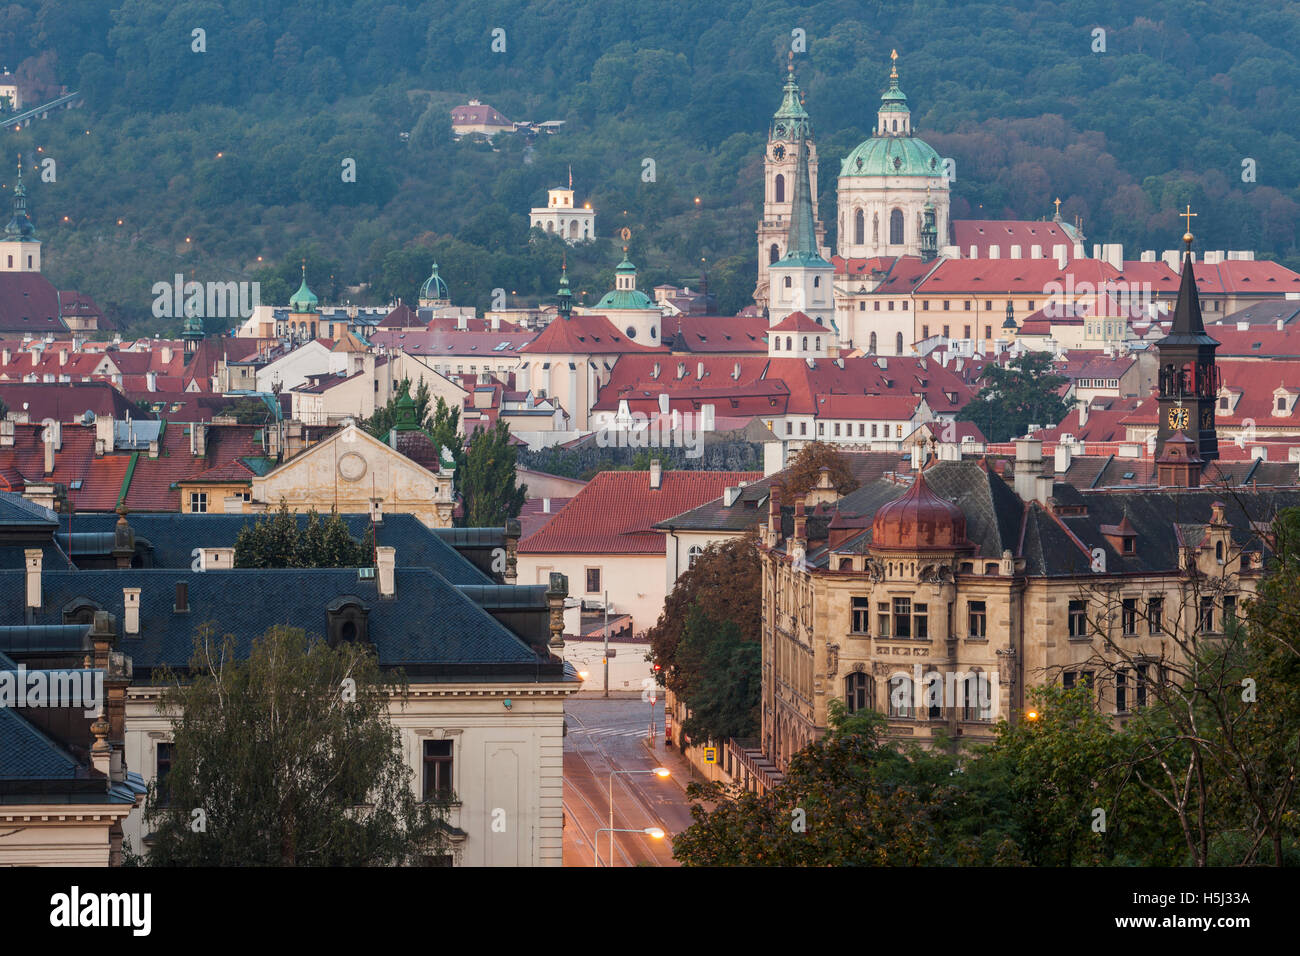 Morgendämmerung in Mala Strana (Kleinseite), Prag, Tschechische Republik. Stockfoto